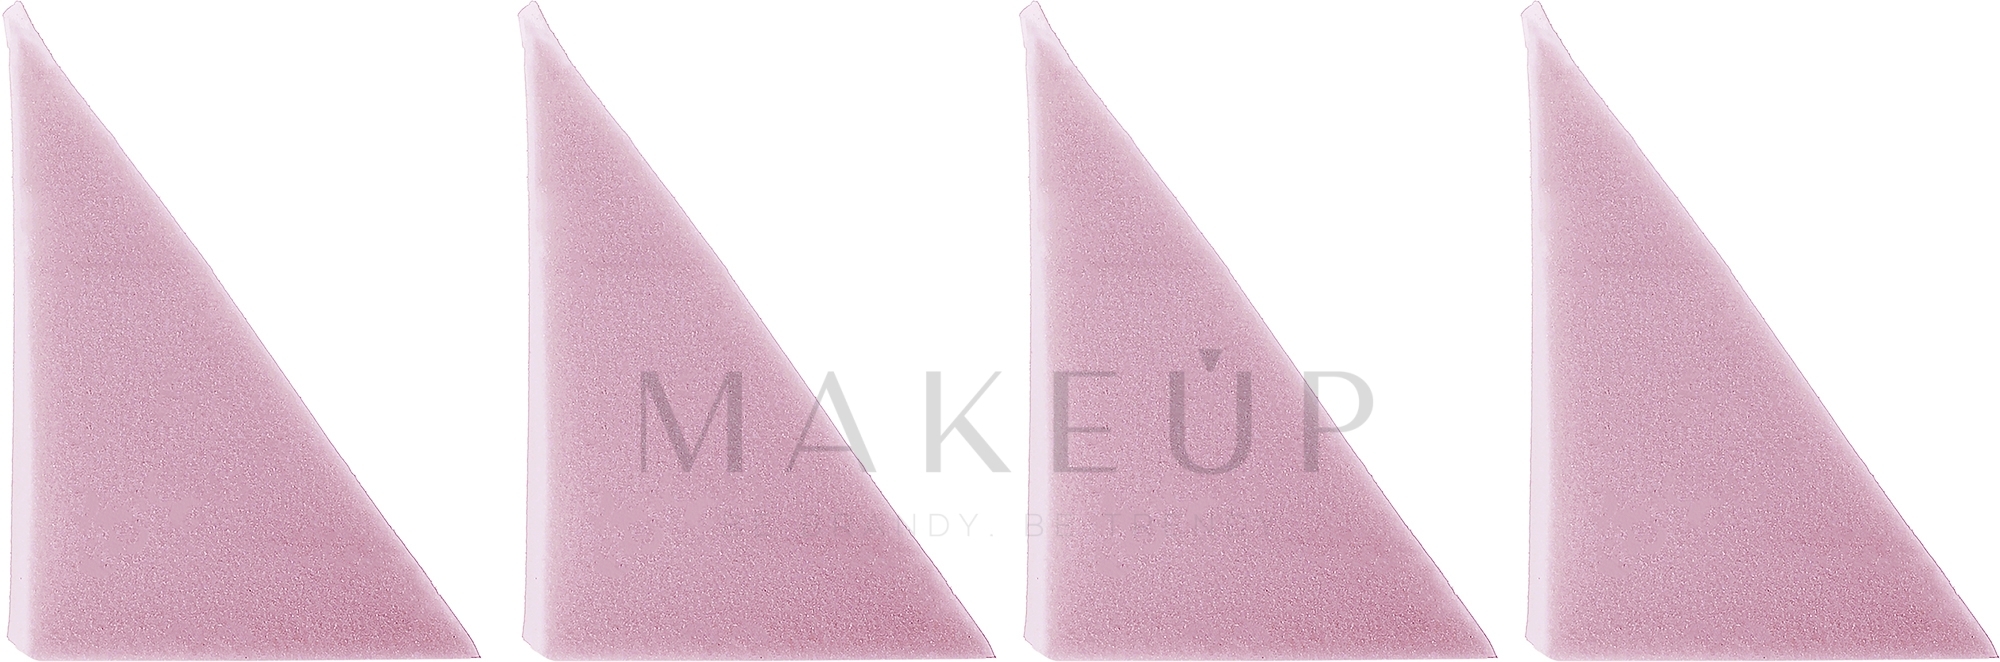 Make-up Schwamm rosa 2 St. - Oriflame — Bild 4 St.